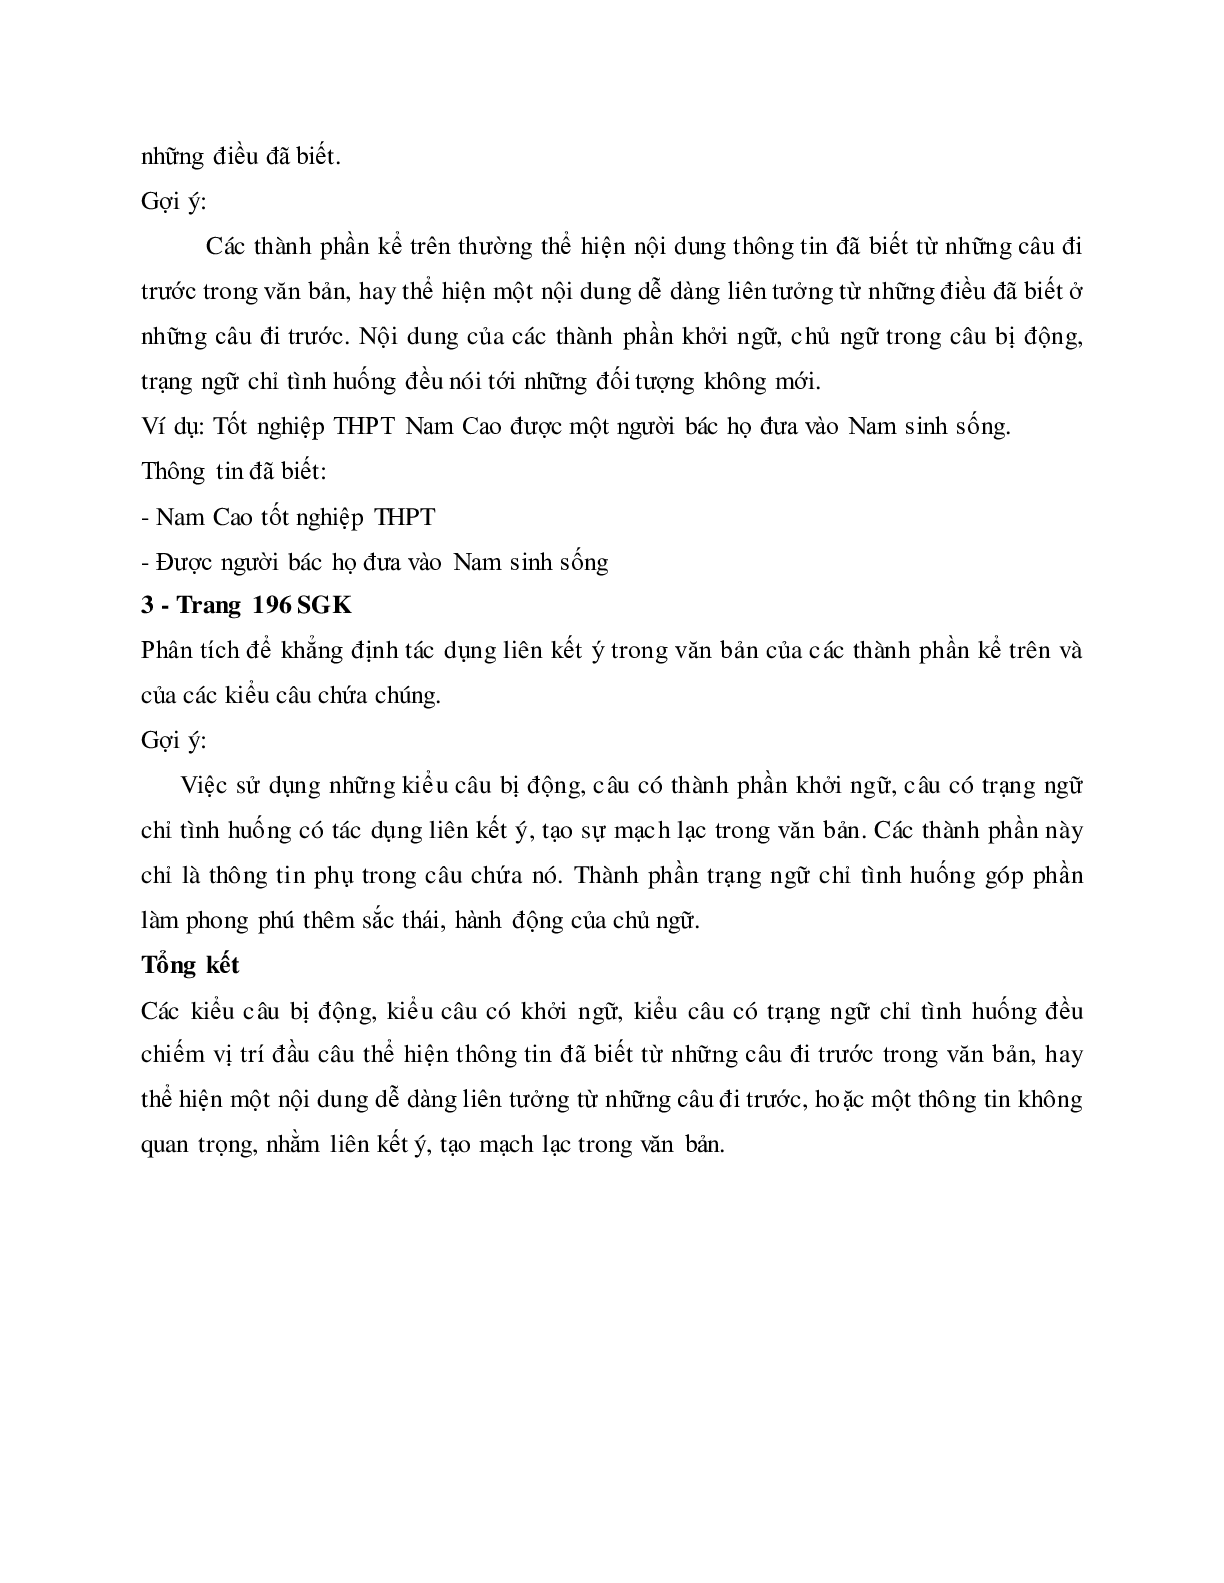 Soạn bài Thực hành về sử dụng một số kiểu câu trong văn bản - ngắn nhất Soạn văn 11 (trang 10)